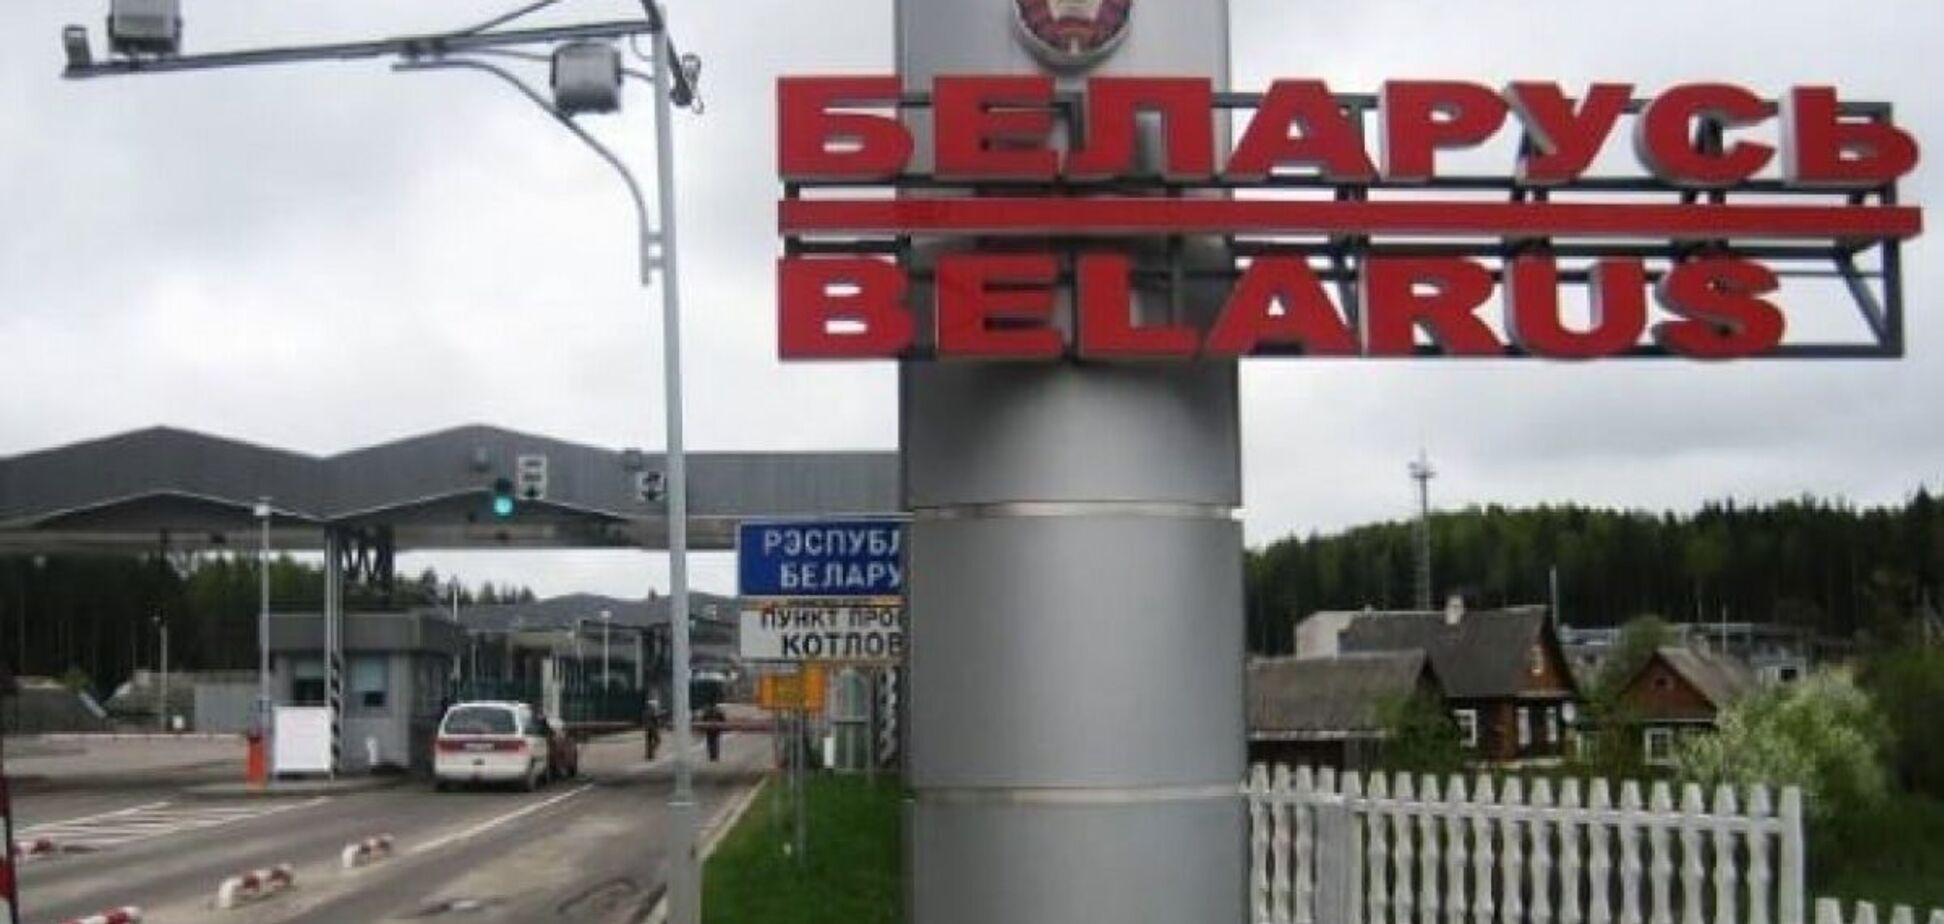 Возможна провокация: в Беларуси сообщают о взрывах в Барановичах и других городах